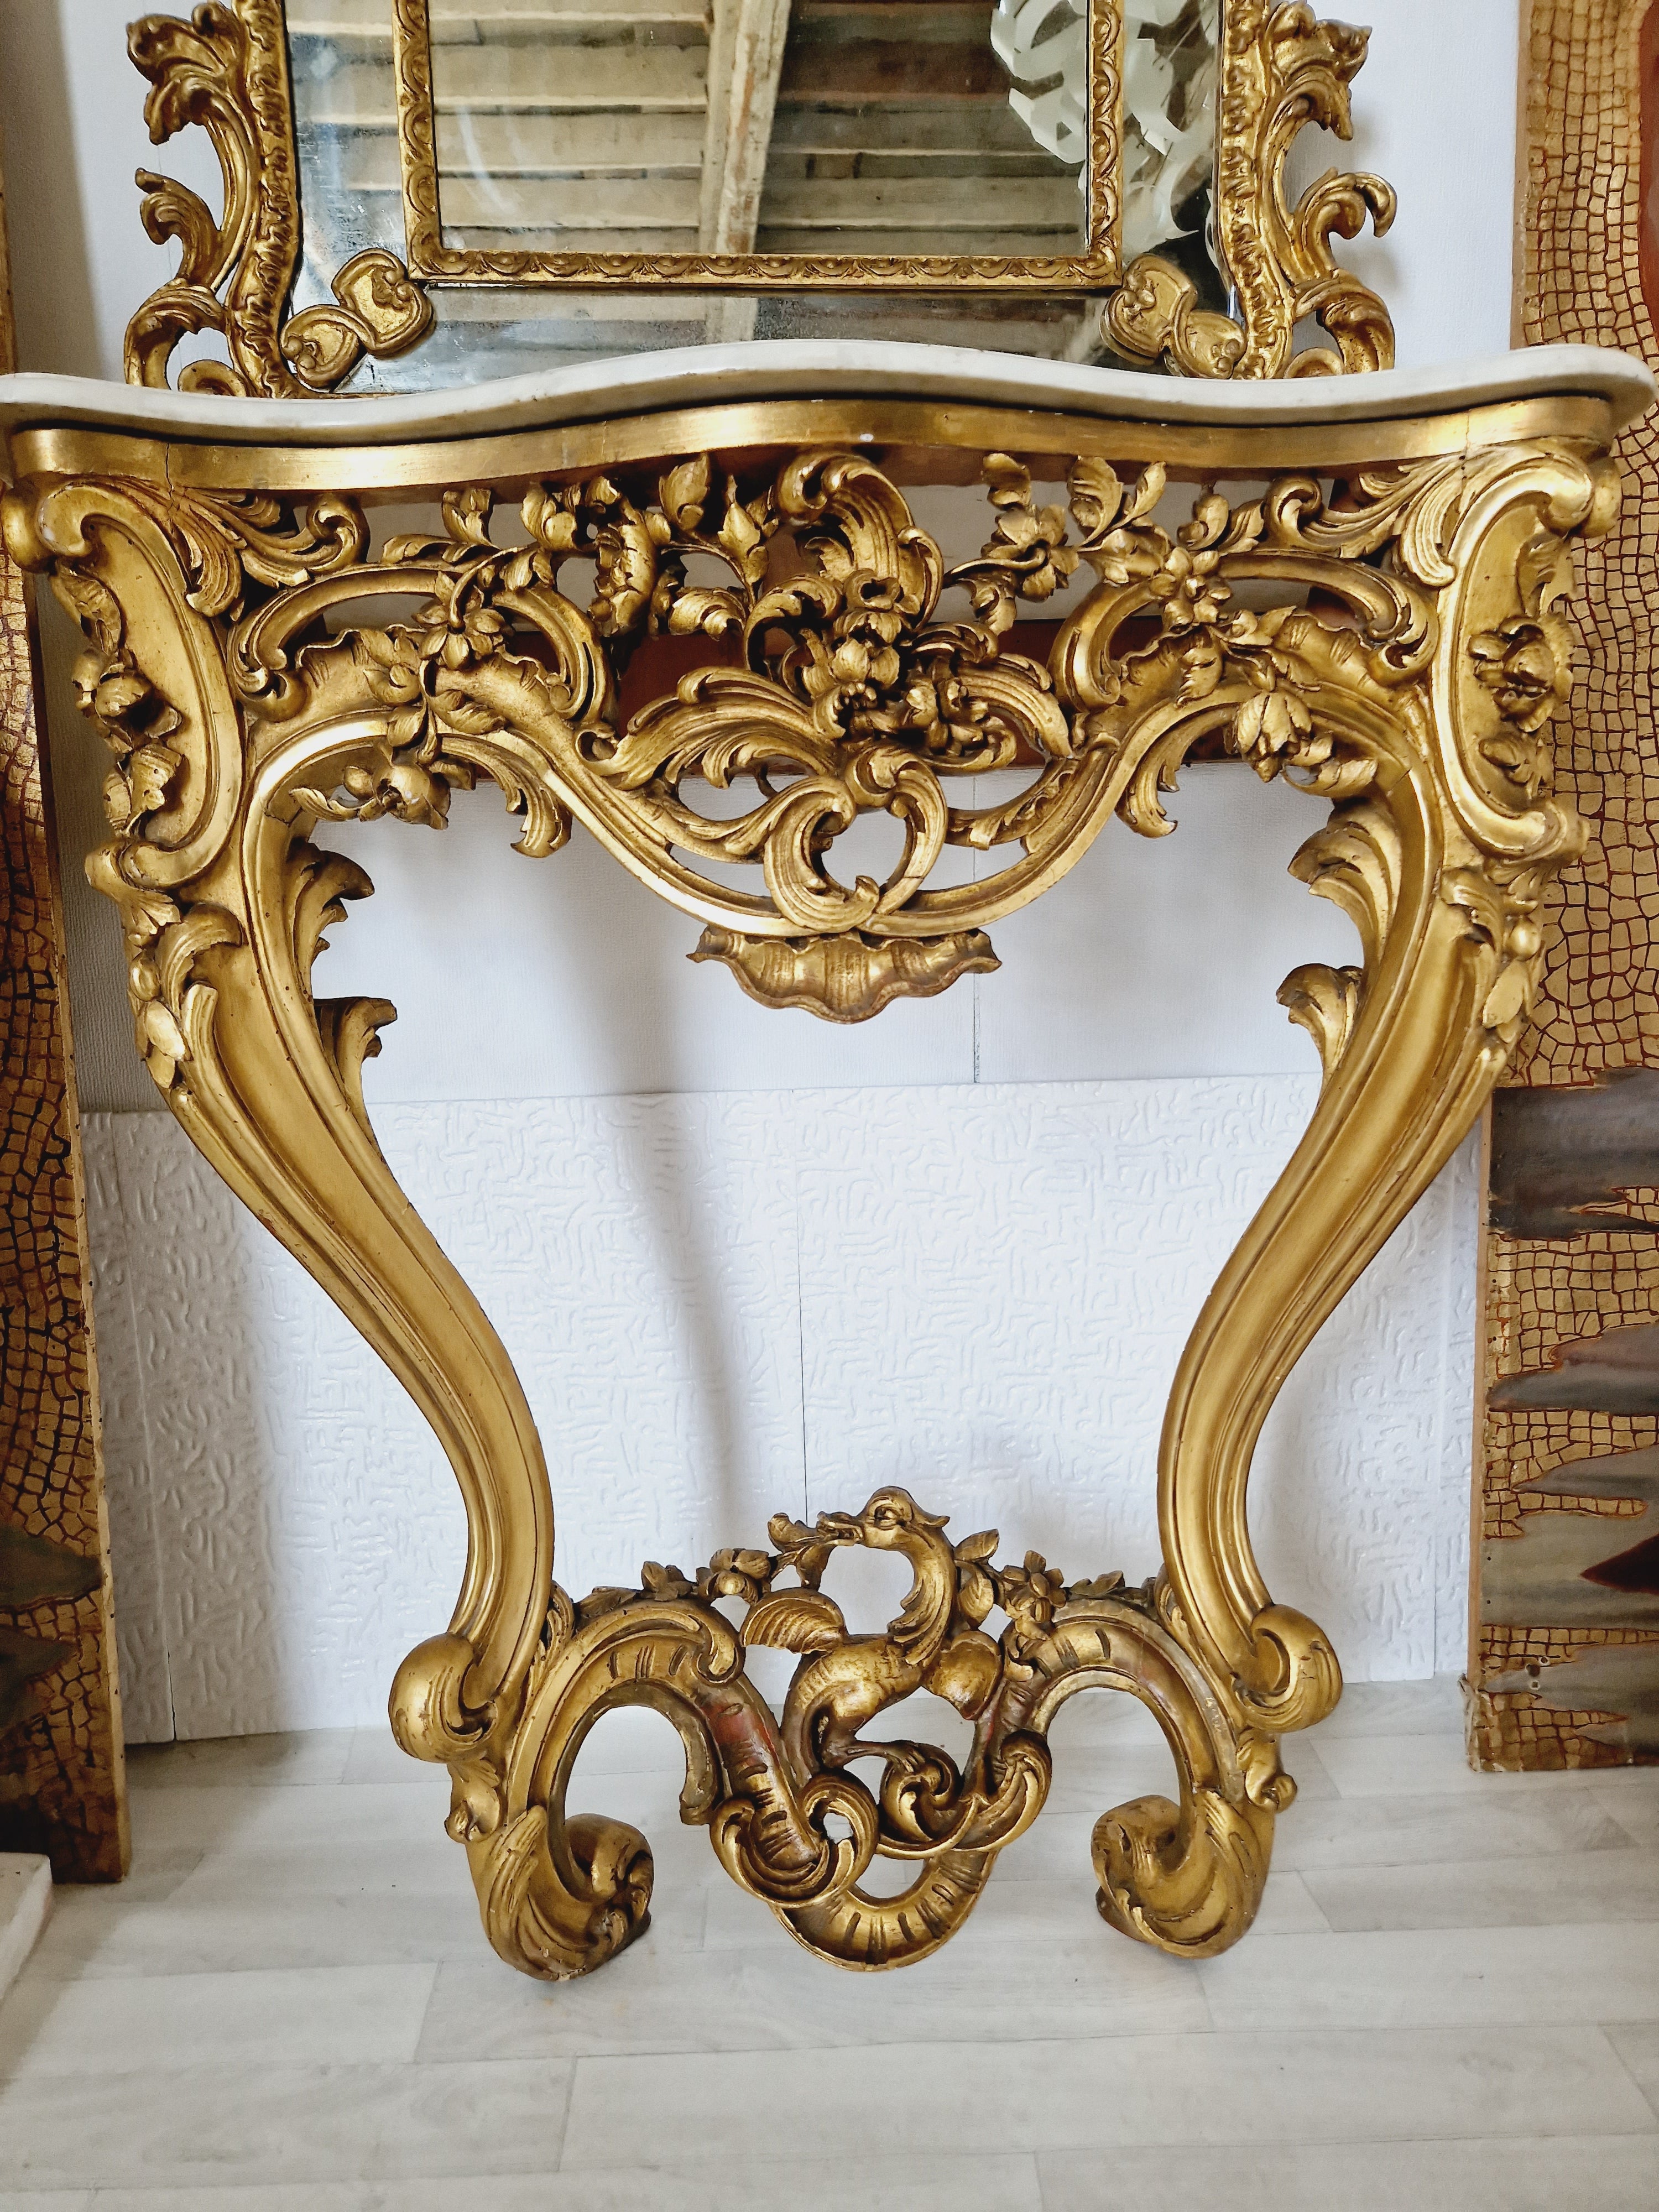 Cette table console française ancienne présente un magnifique design rococo de la période Louis XV. Sa forme rectangulaire et son statut entièrement assemblé en font un complément idéal à toute pièce intérieure. Le plateau et le matériau sont en